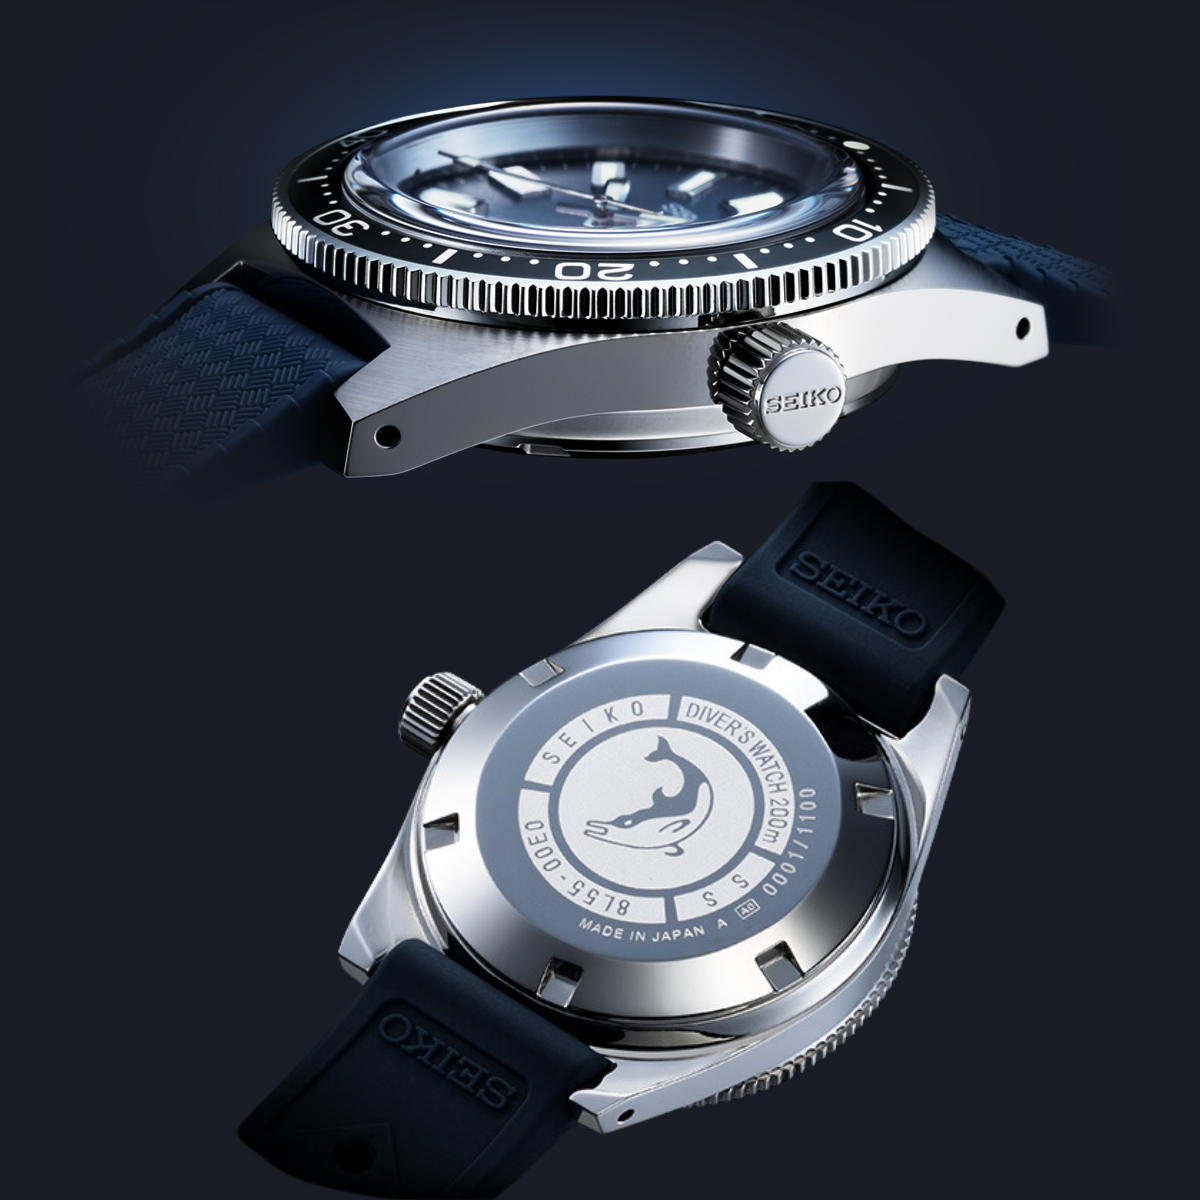 นาฬิกา SEIKO Prospex Diver's Watch 55th Anniversary Limited Edition รุ่น SLA037 SLA037J SLA037J1 (SBEX013J1) Automatic